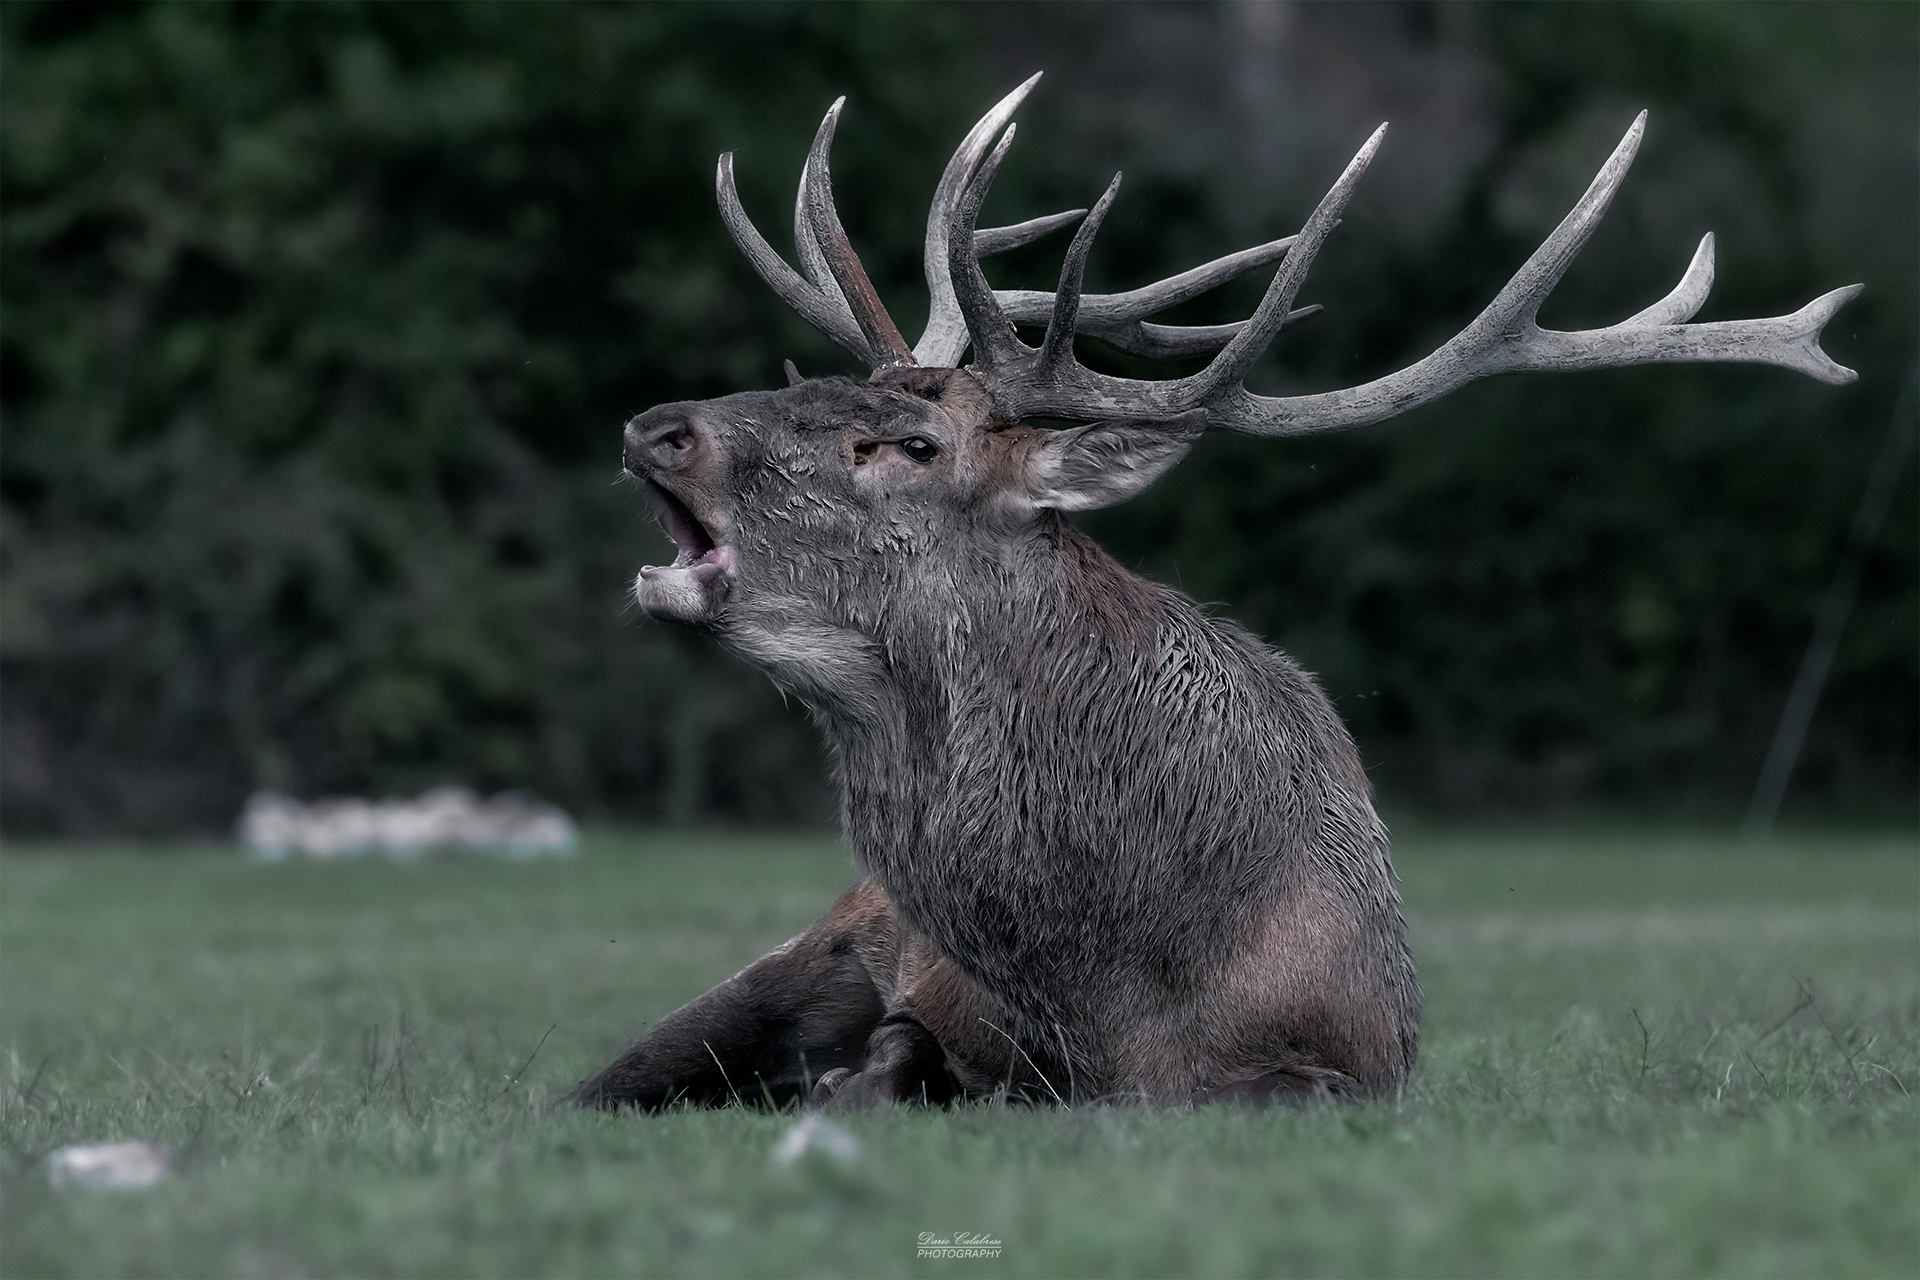 Big stag, big antlers...